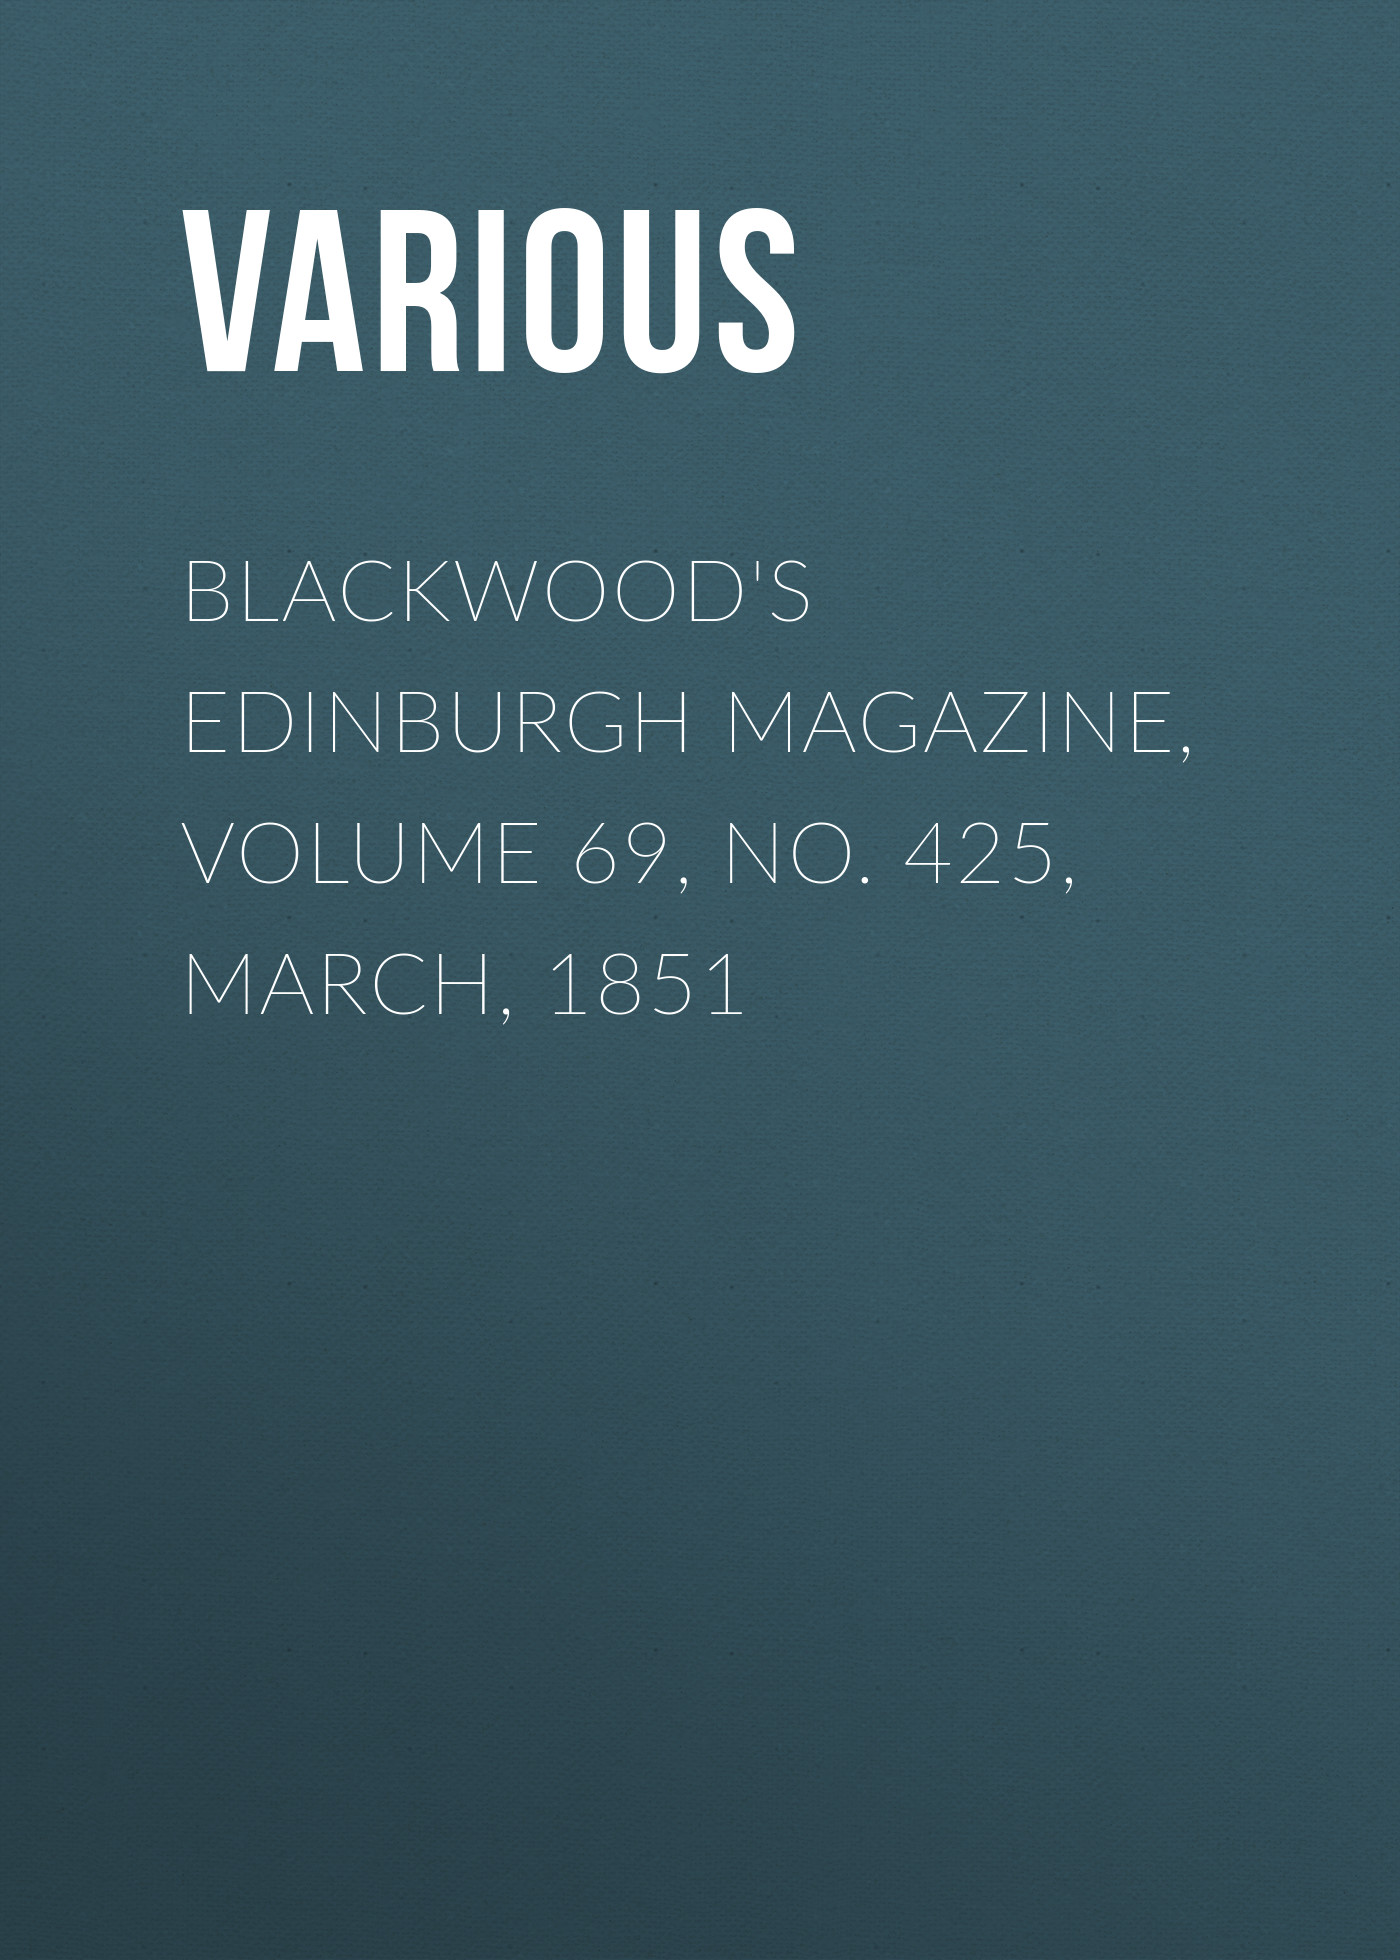 Книга Blackwood's Edinburgh Magazine, Volume 69, No. 425, March, 1851 из серии , созданная  Various, может относится к жанру Журналы, Зарубежная образовательная литература, Книги о Путешествиях. Стоимость электронной книги Blackwood's Edinburgh Magazine, Volume 69, No. 425, March, 1851 с идентификатором 25568711 составляет 0 руб.